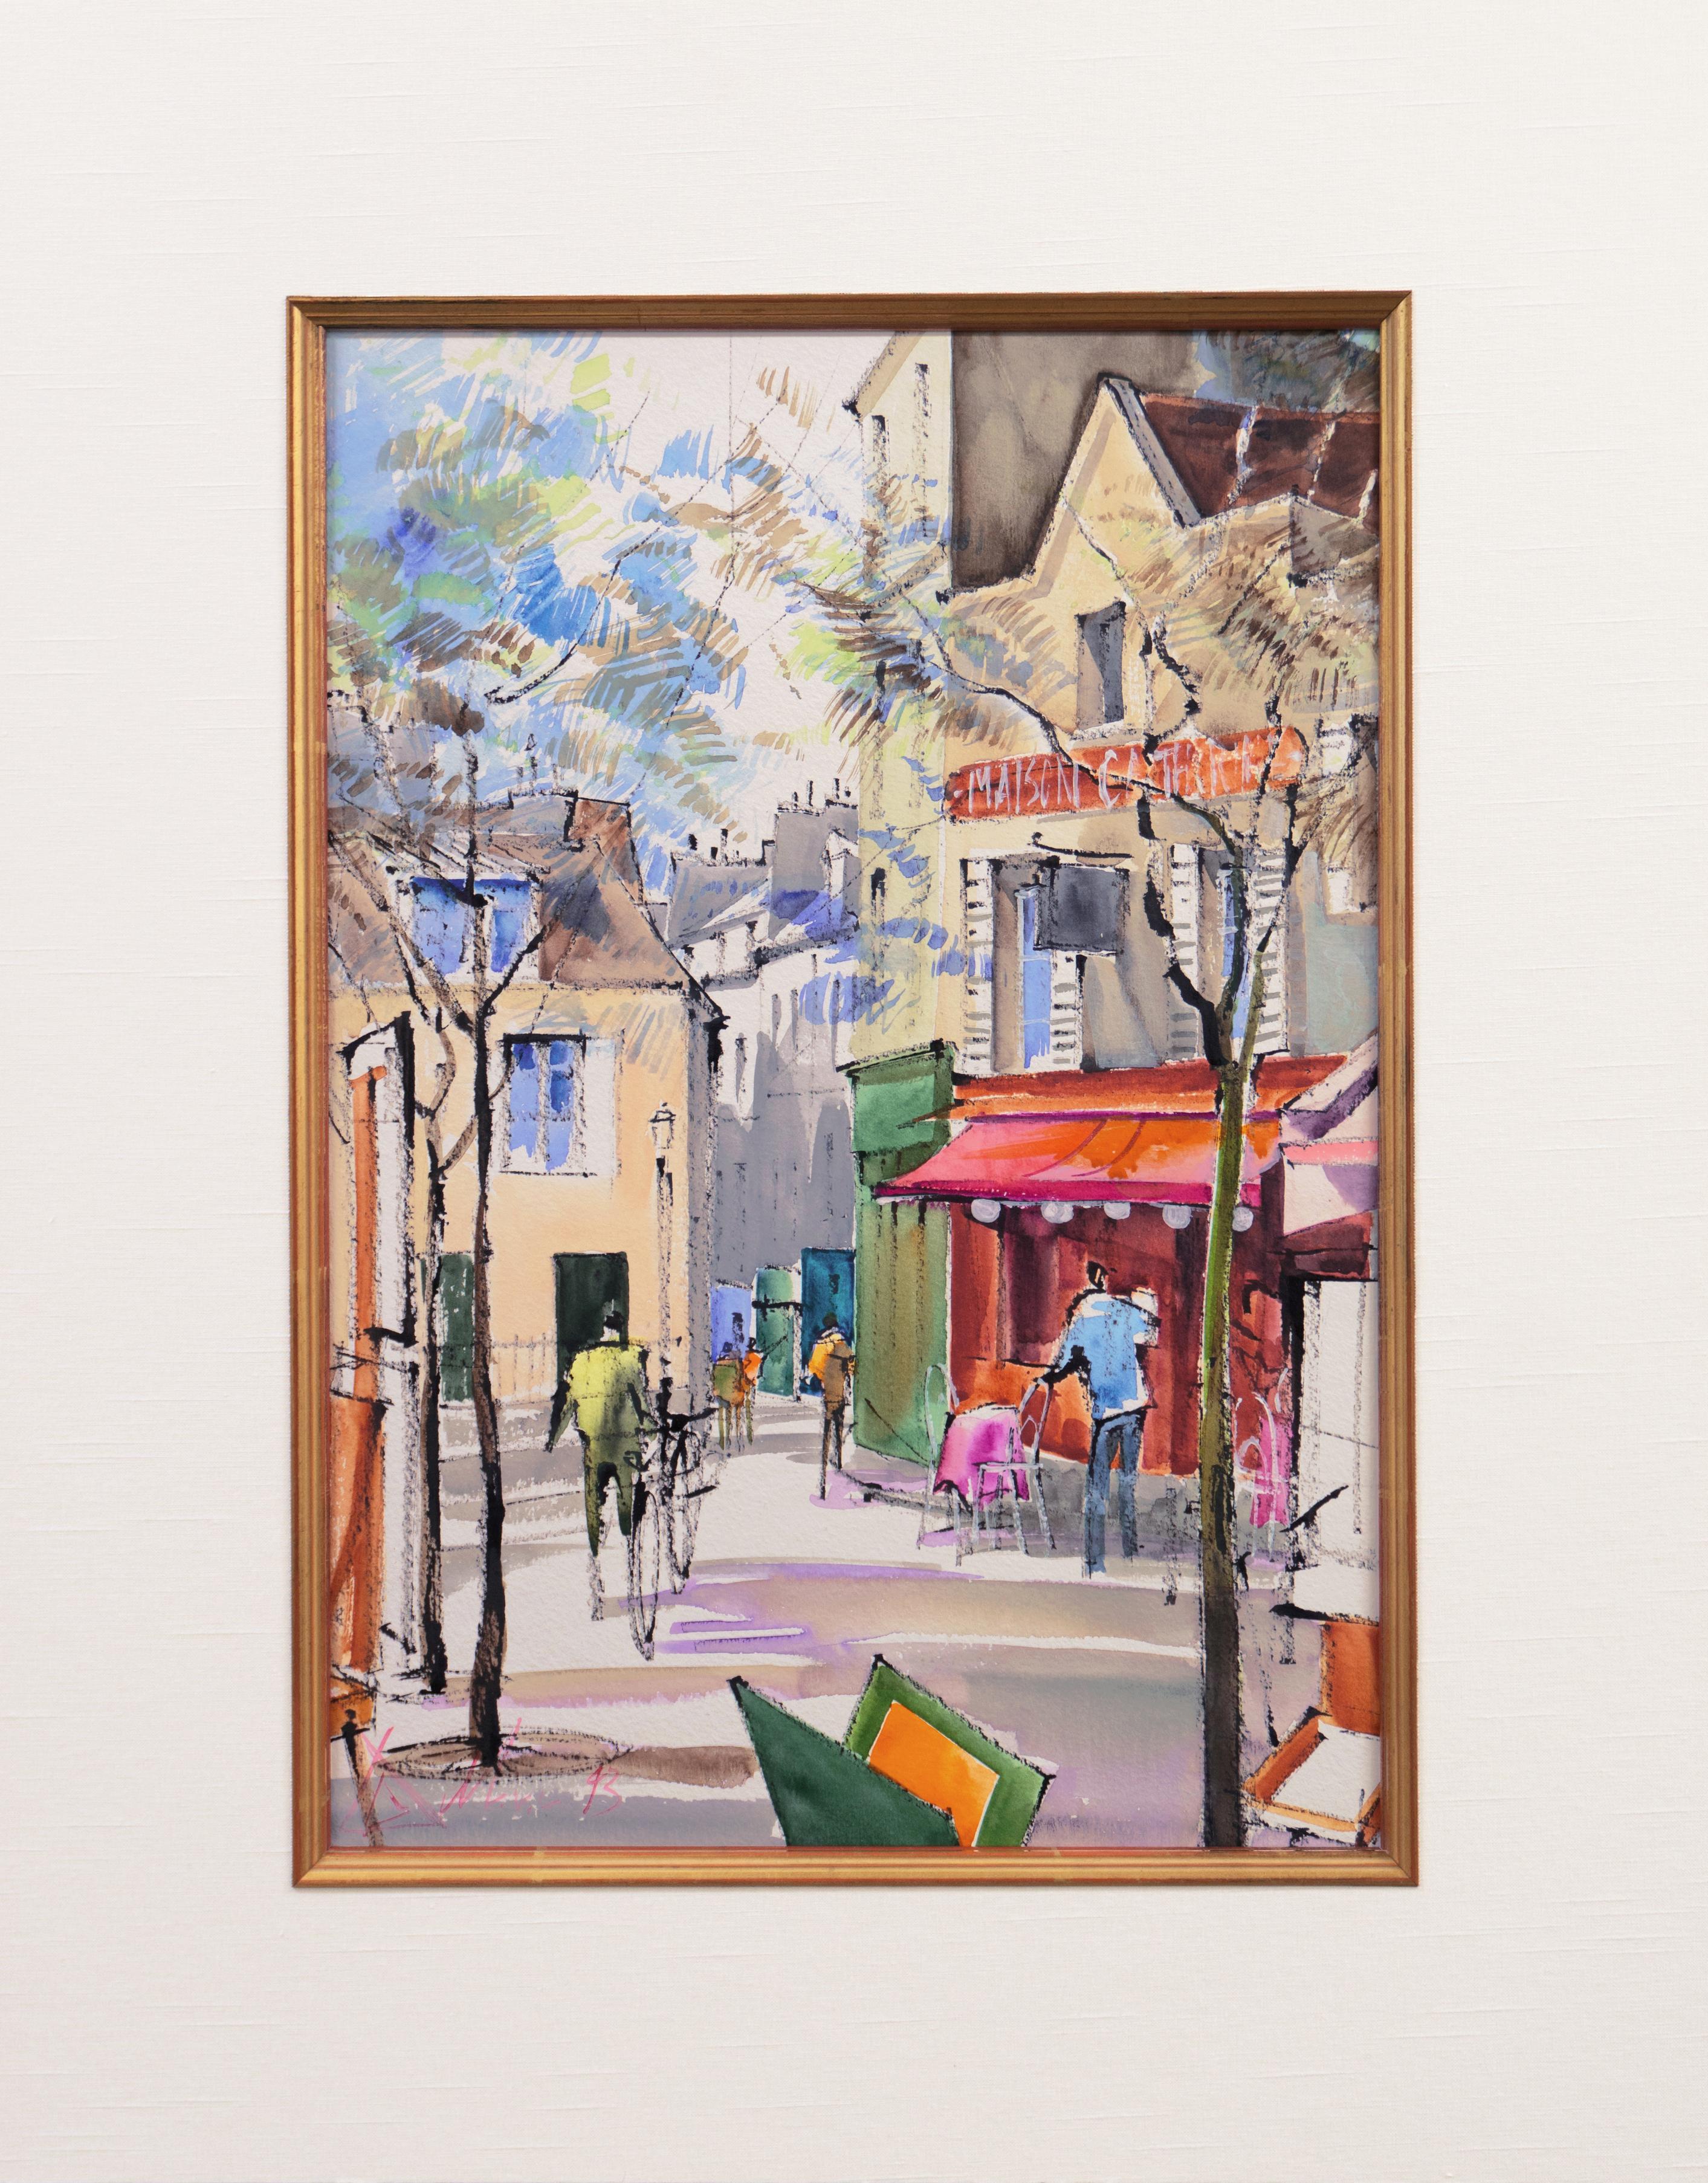 'Maison Catherine, Montmartre', La Mere Catherine, Place du Tertre, Paris - Post-Impressionist Art by 20th Century French School